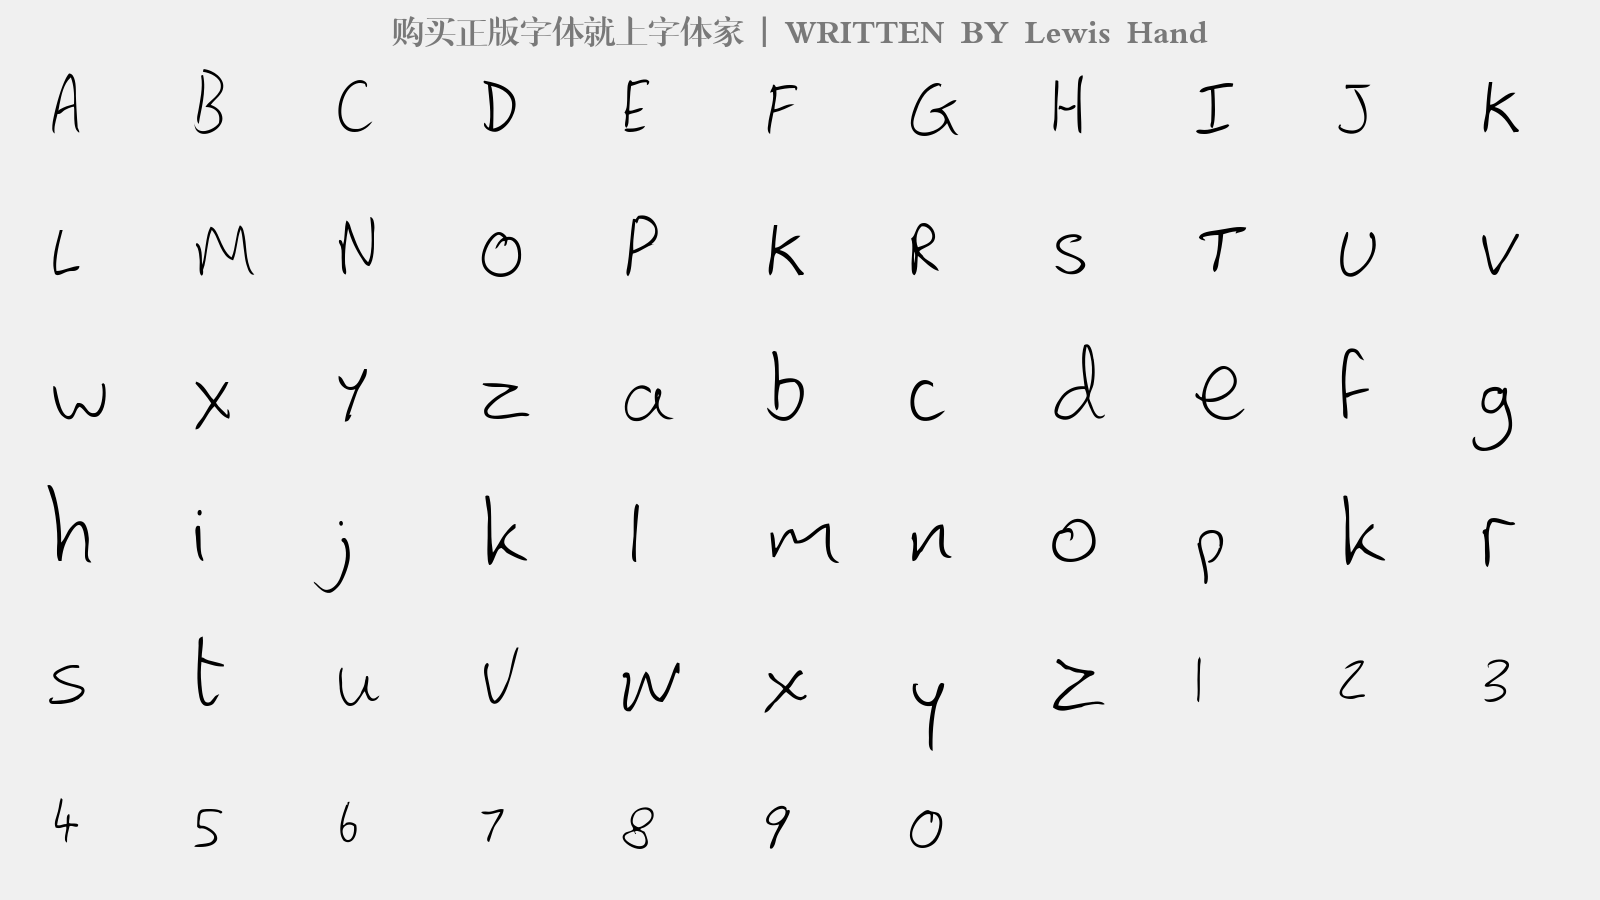 Lewis Hand - 大写字母/小写字母/数字